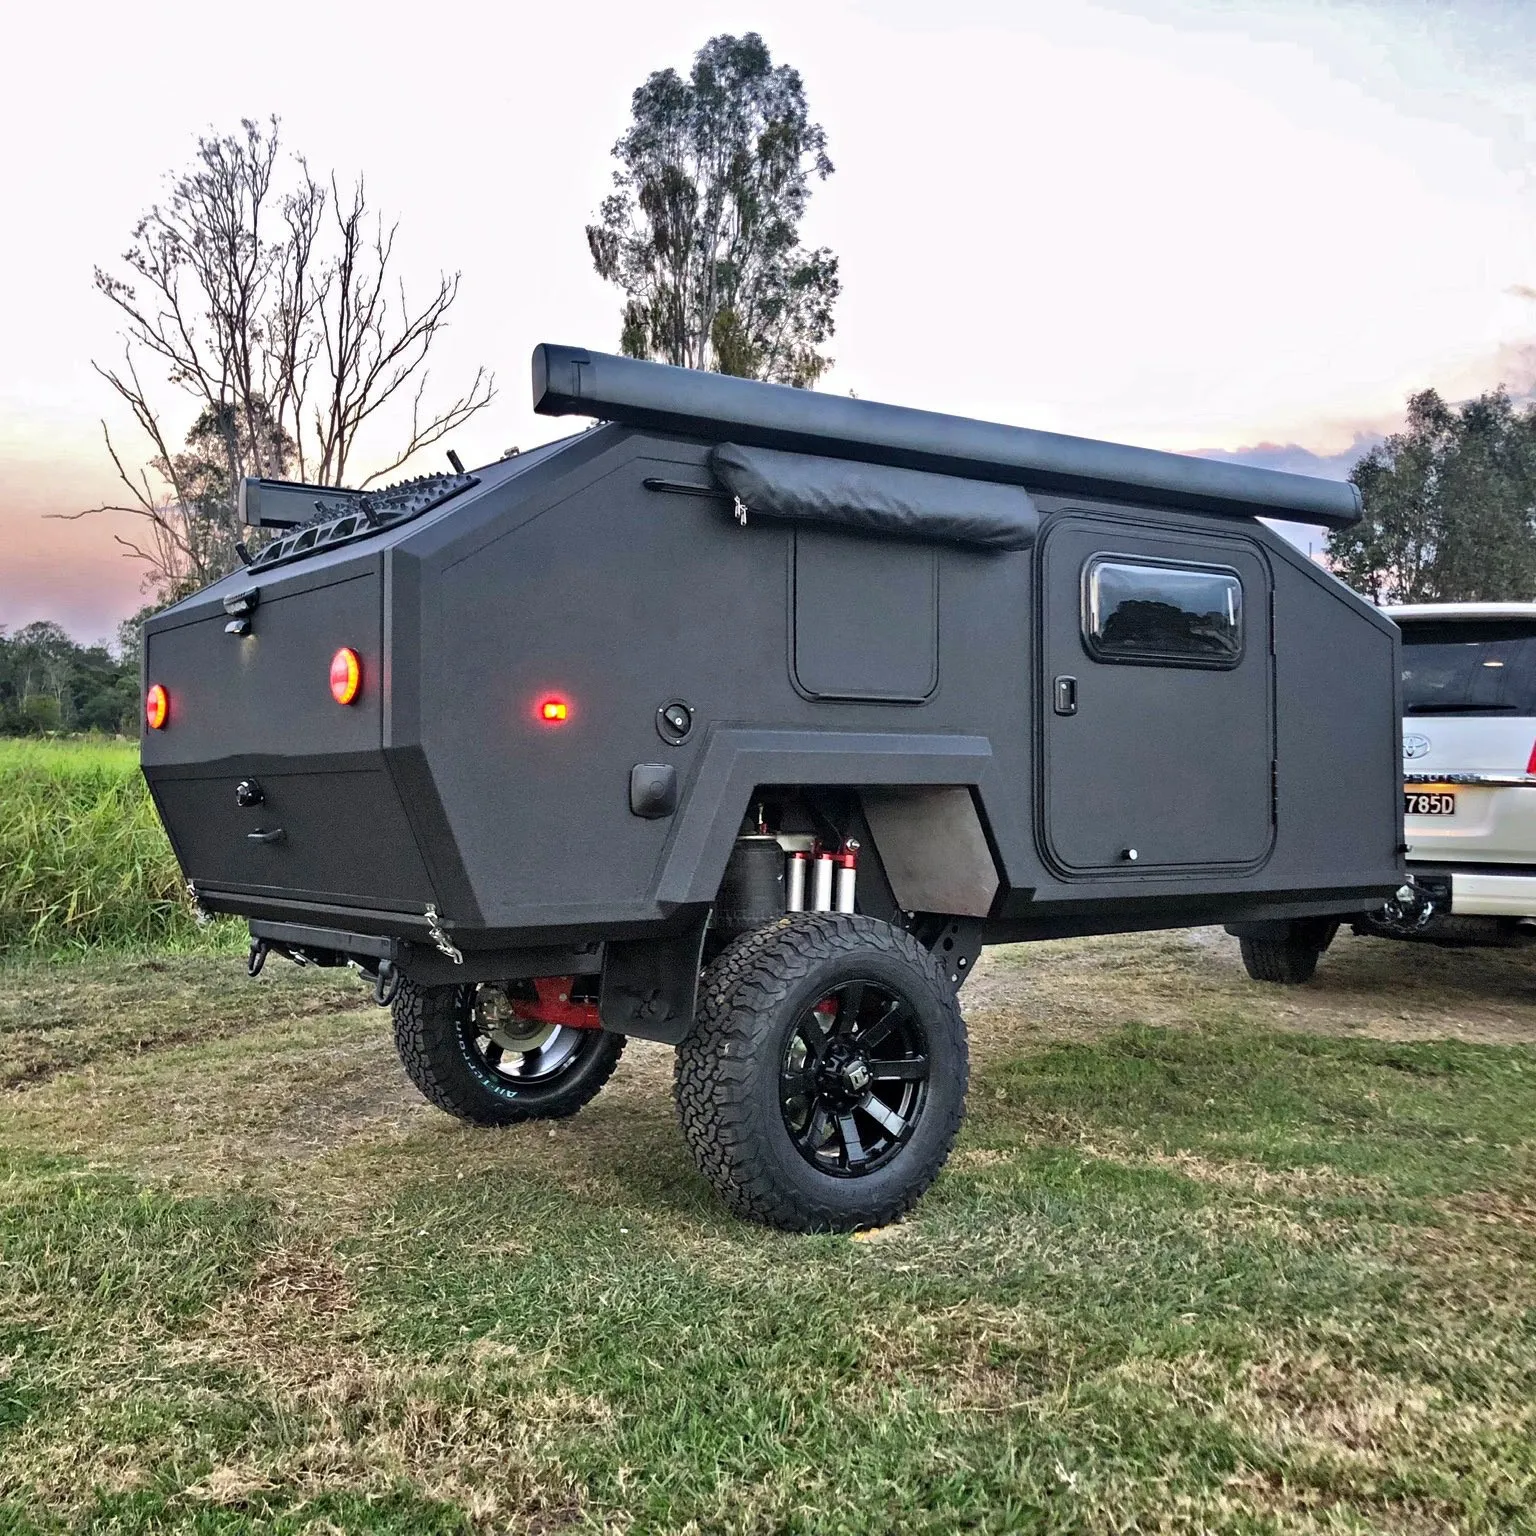 Ecocampor Úc Tiêu Chuẩn Nhỏ Du Lịch Camper Trailer Offroad RV Caravan Với Lều Và Phòng Tắm